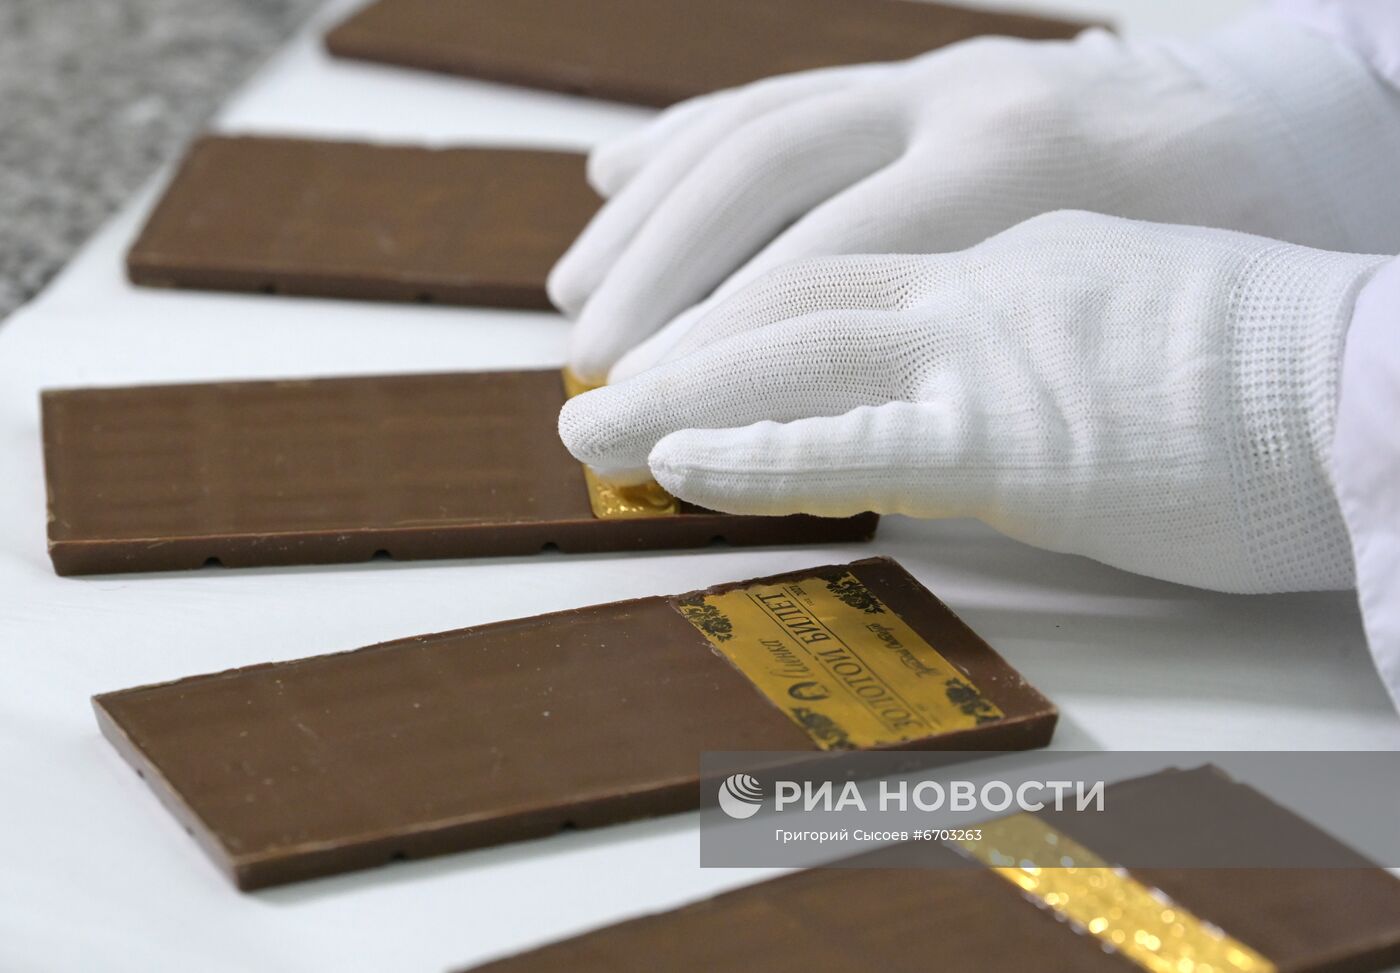 Кондитеры вложат золотые билеты в плитки молочного шоколада "Аленка"